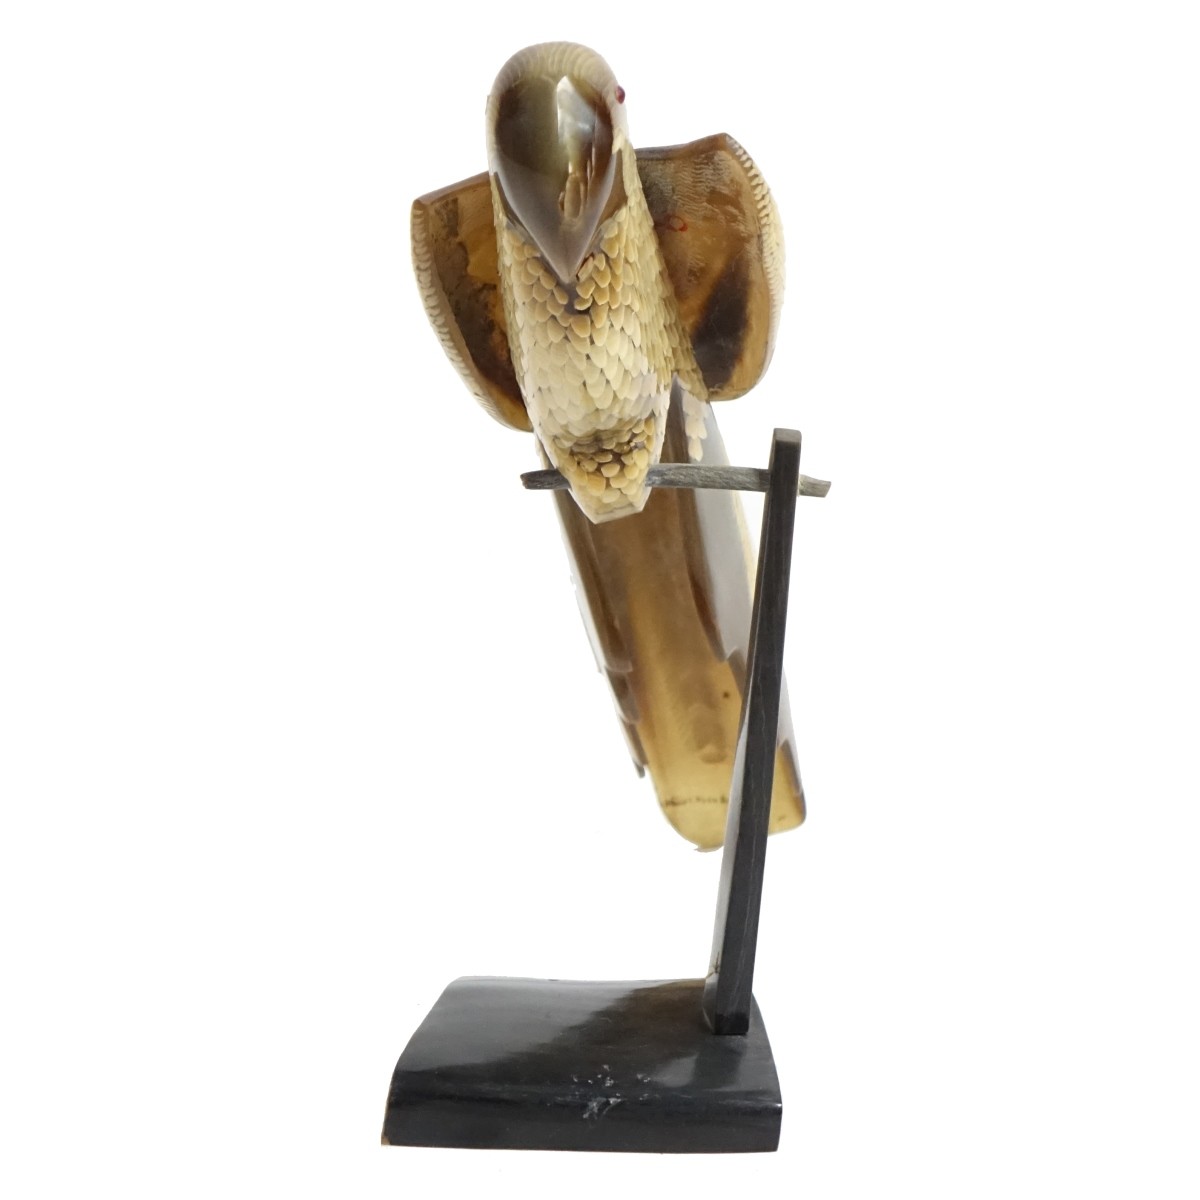 Vintage Hand Carved Horn Model of a Parrot